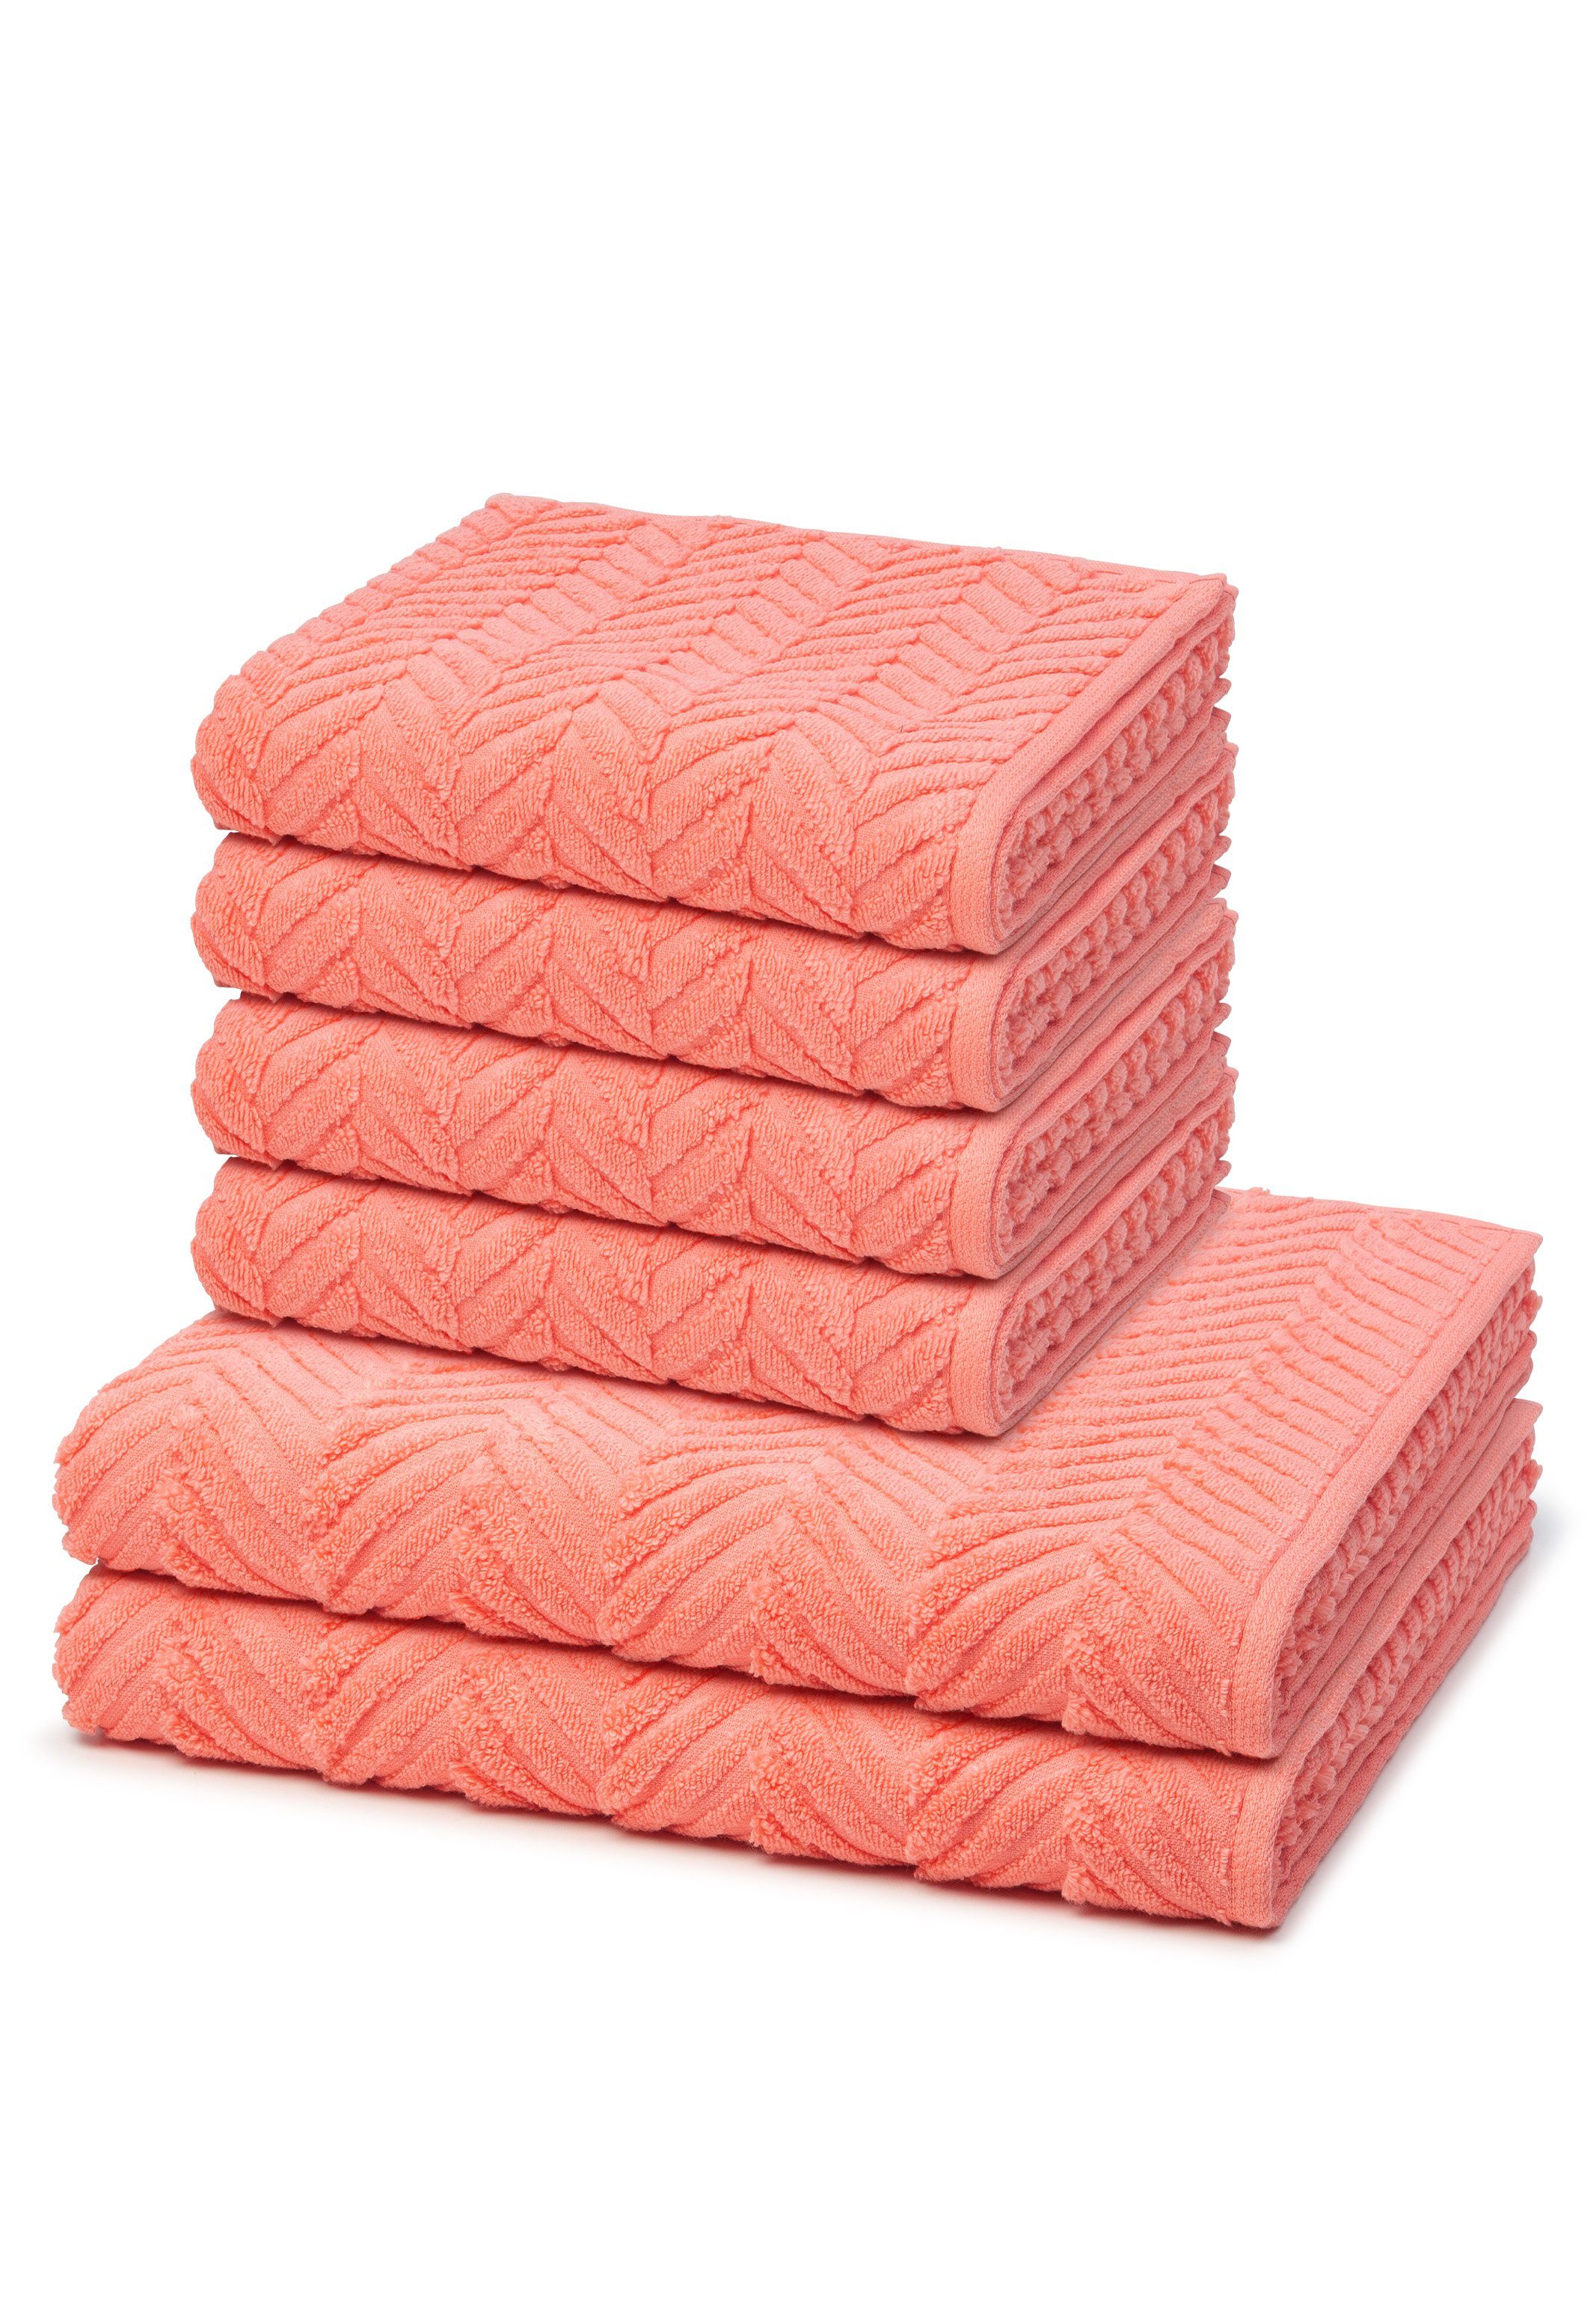 ROSS Handtuch Set Sensual Skin, Walkfrottee, (Spar-Set, 6-tlg), 4 X Handtuch 2 X Duschtuch im Set - Baumwolle - Schnelltrocknend Peach Pink